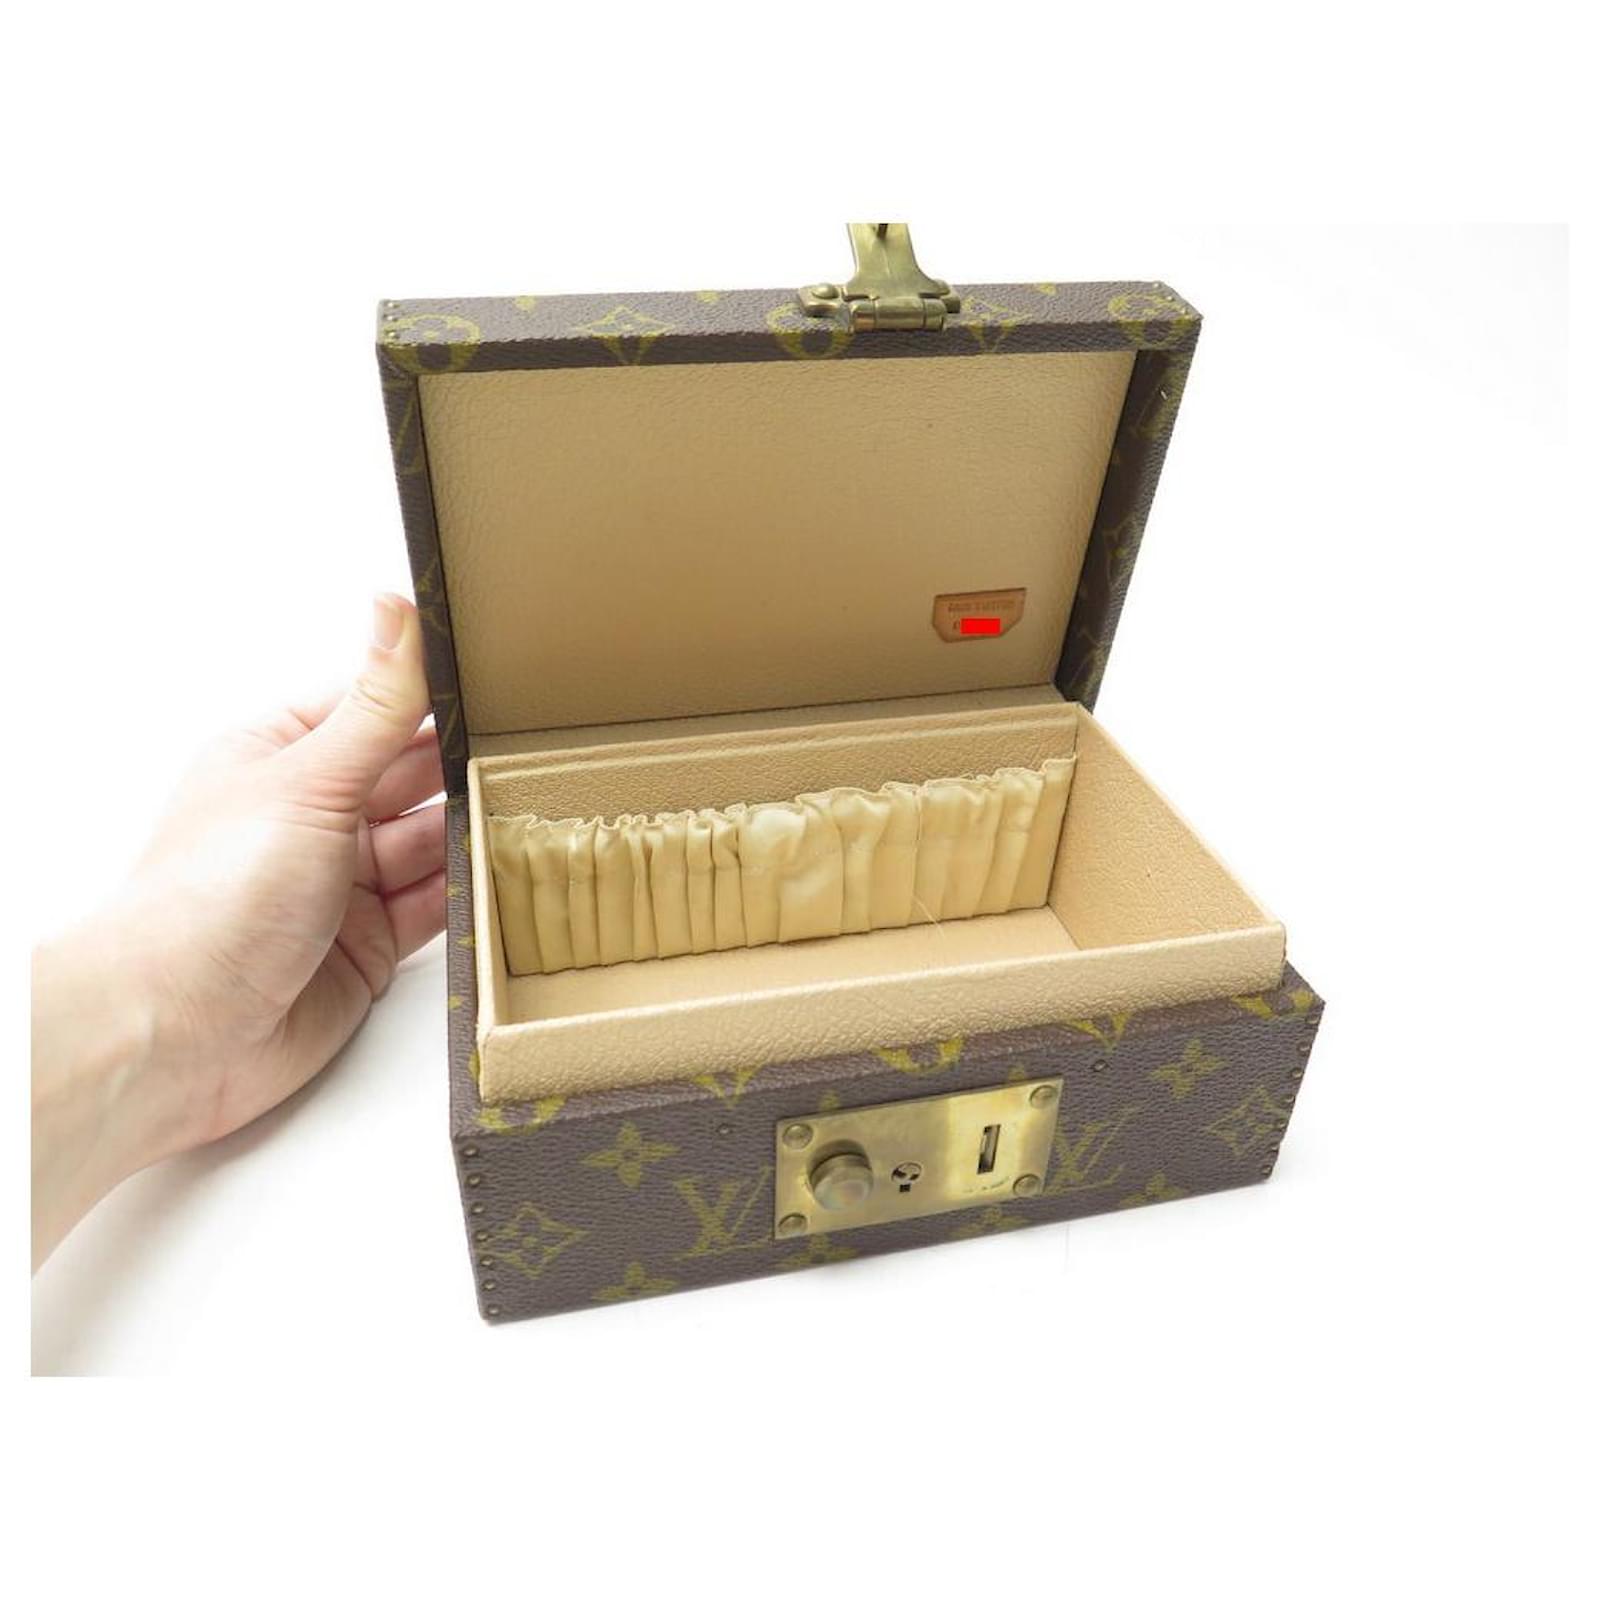 Louis Vuitton Jewelry Box Vintage 80s - Katheley's